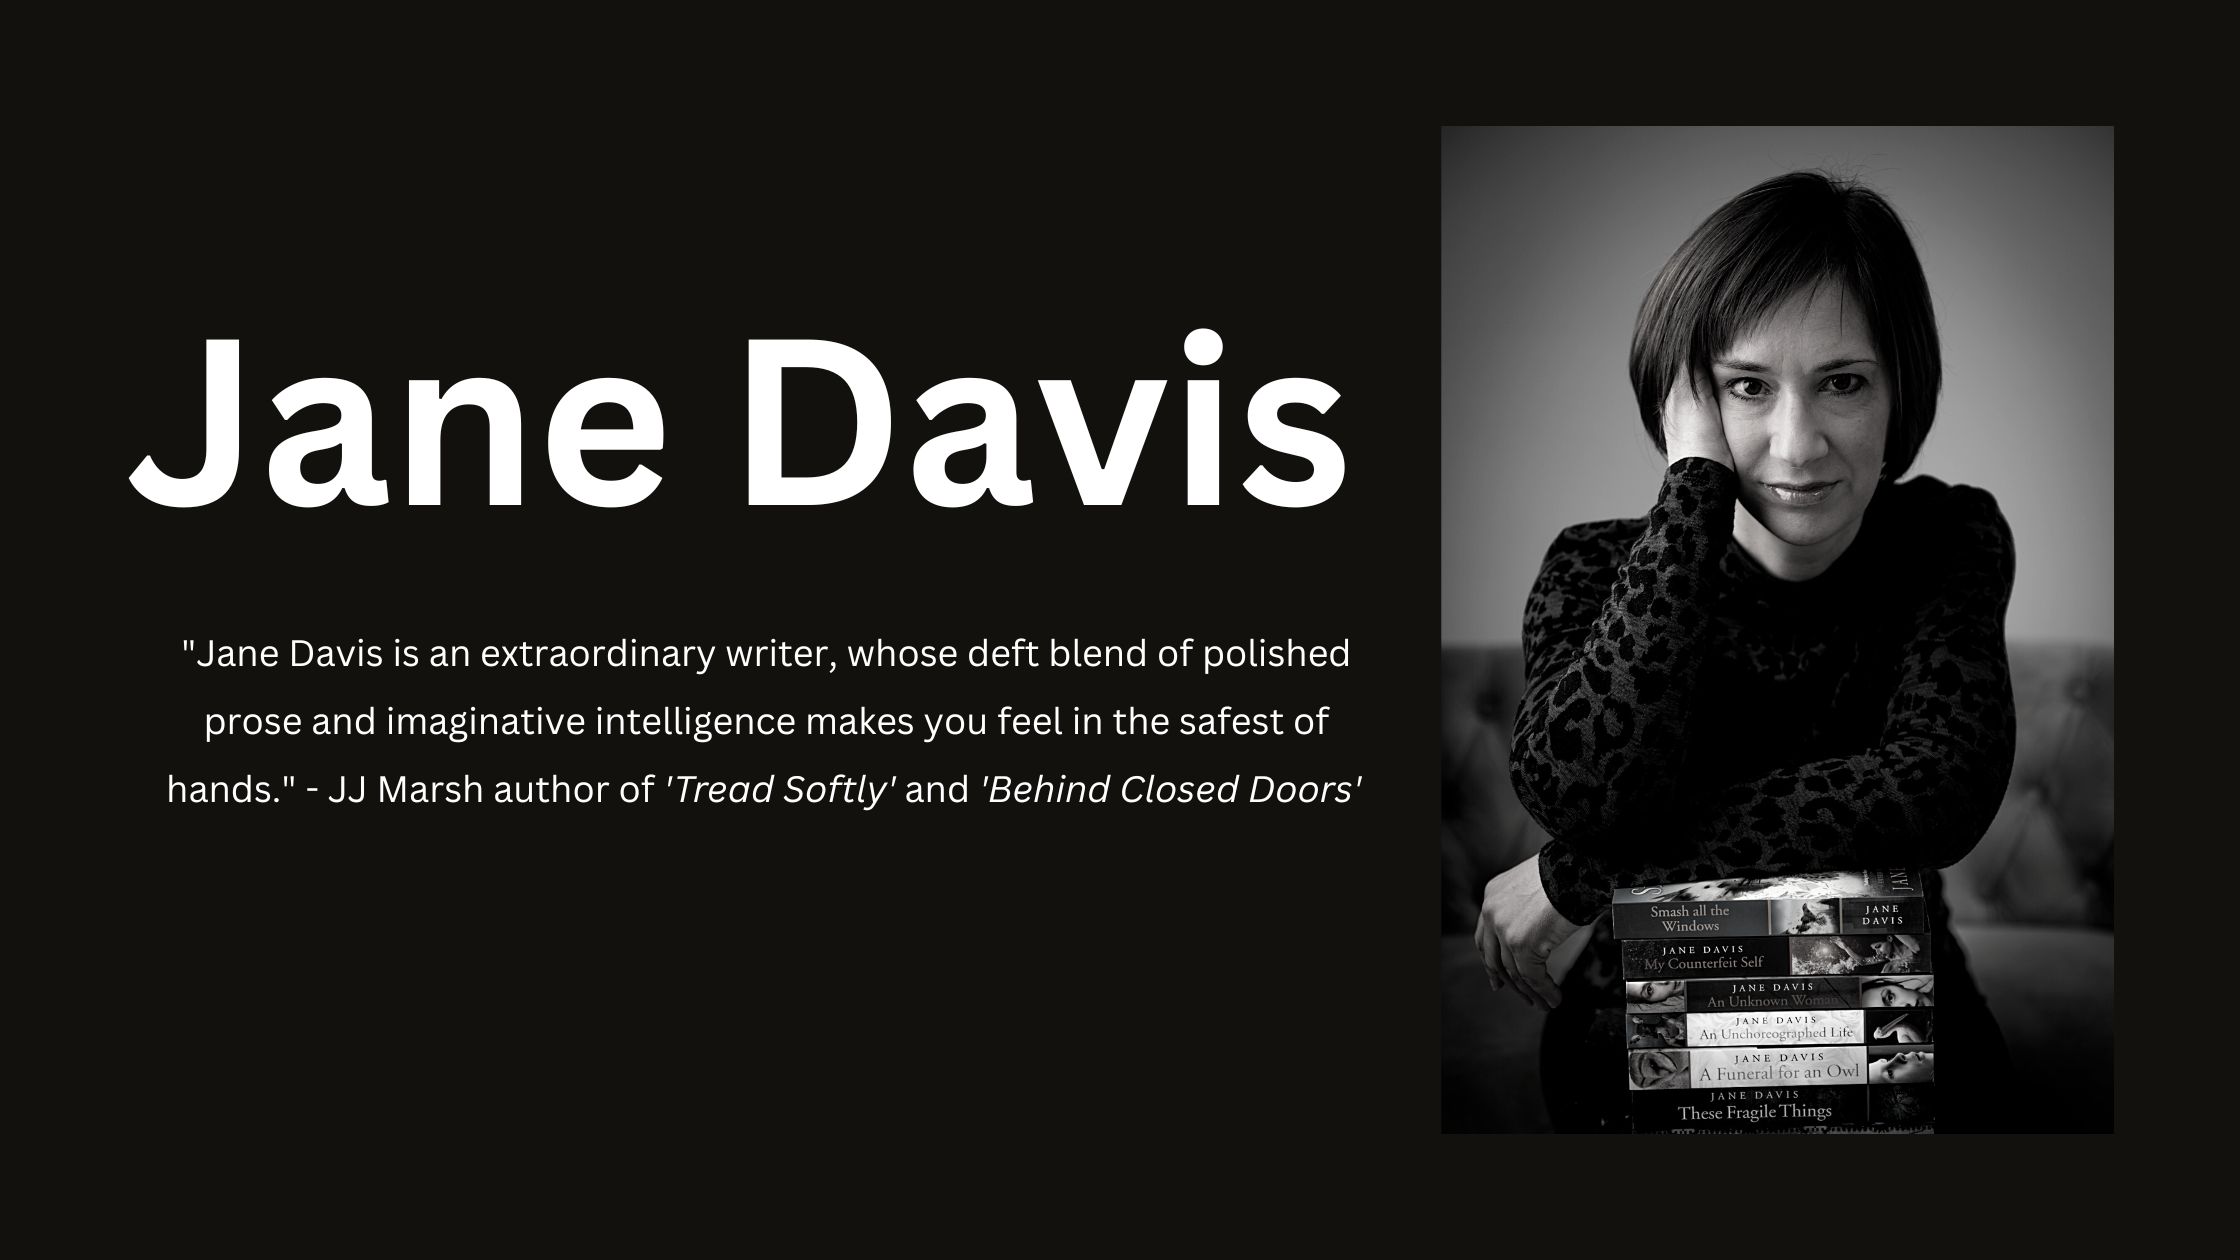 Jane Davis, the ‘One to watch’.